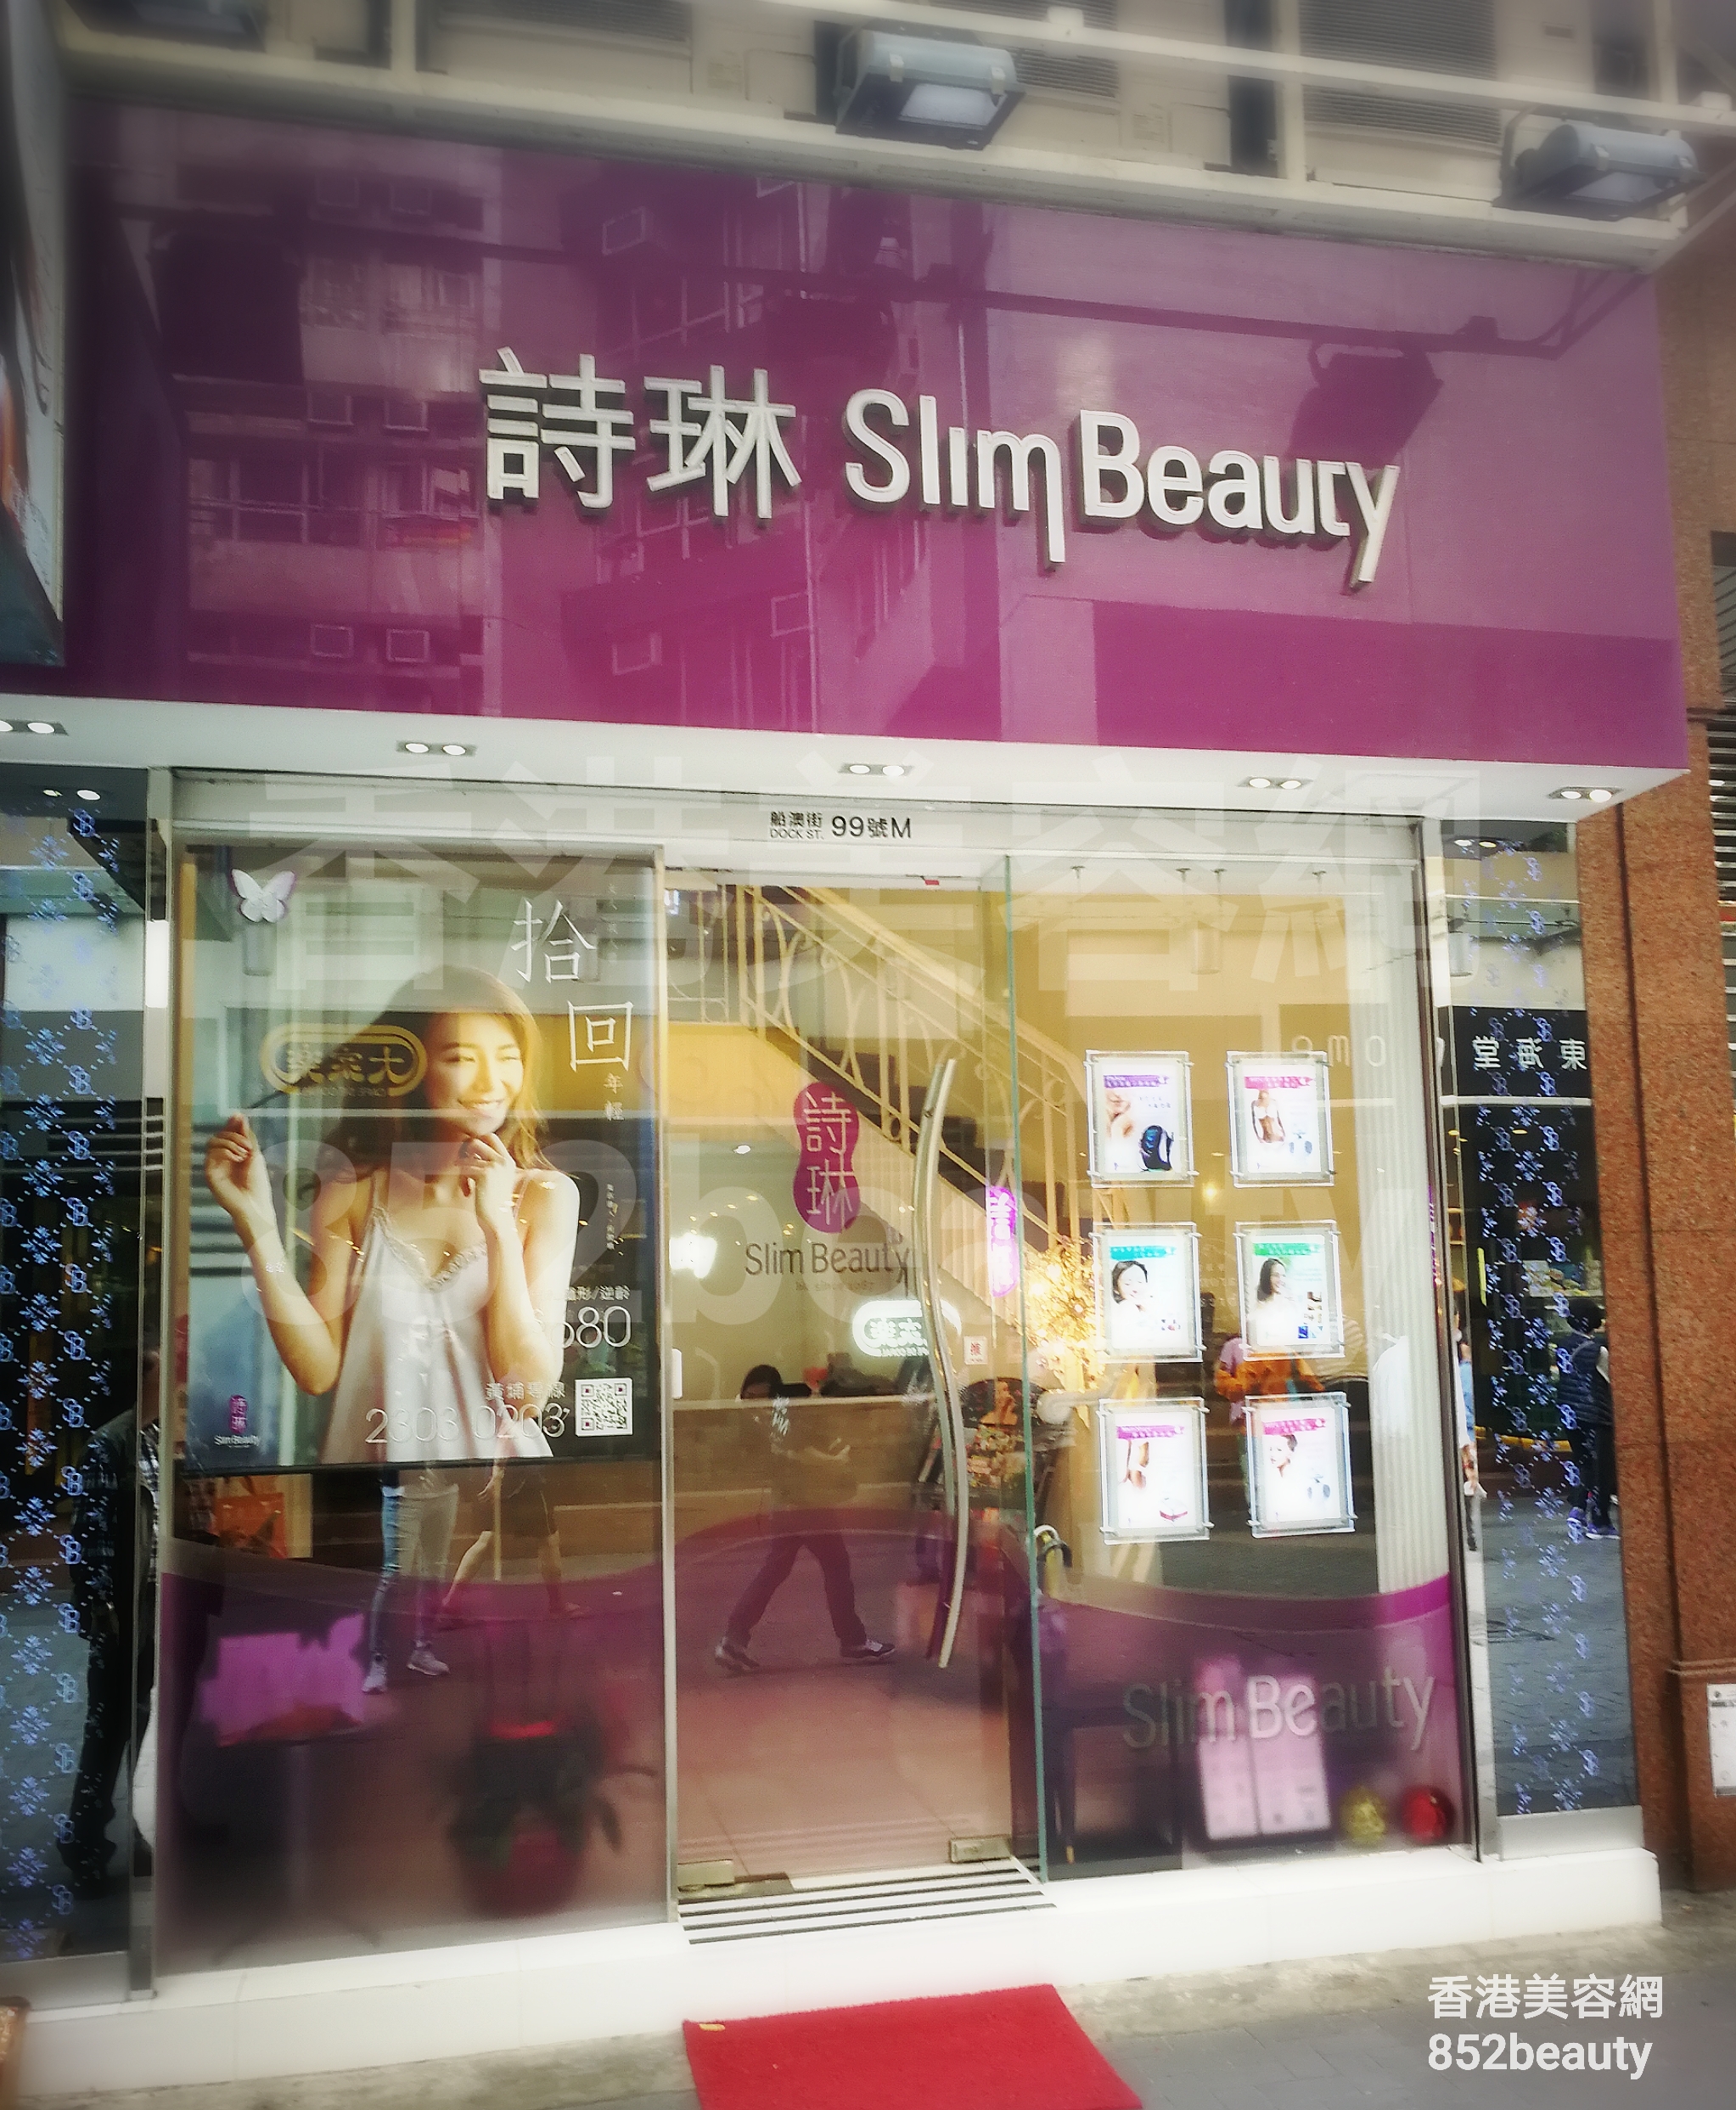 香港美容網 Hong Kong Beauty Salon 美容院 / 美容師: 詩琳美容 Slim Beauty (黃埔分店)